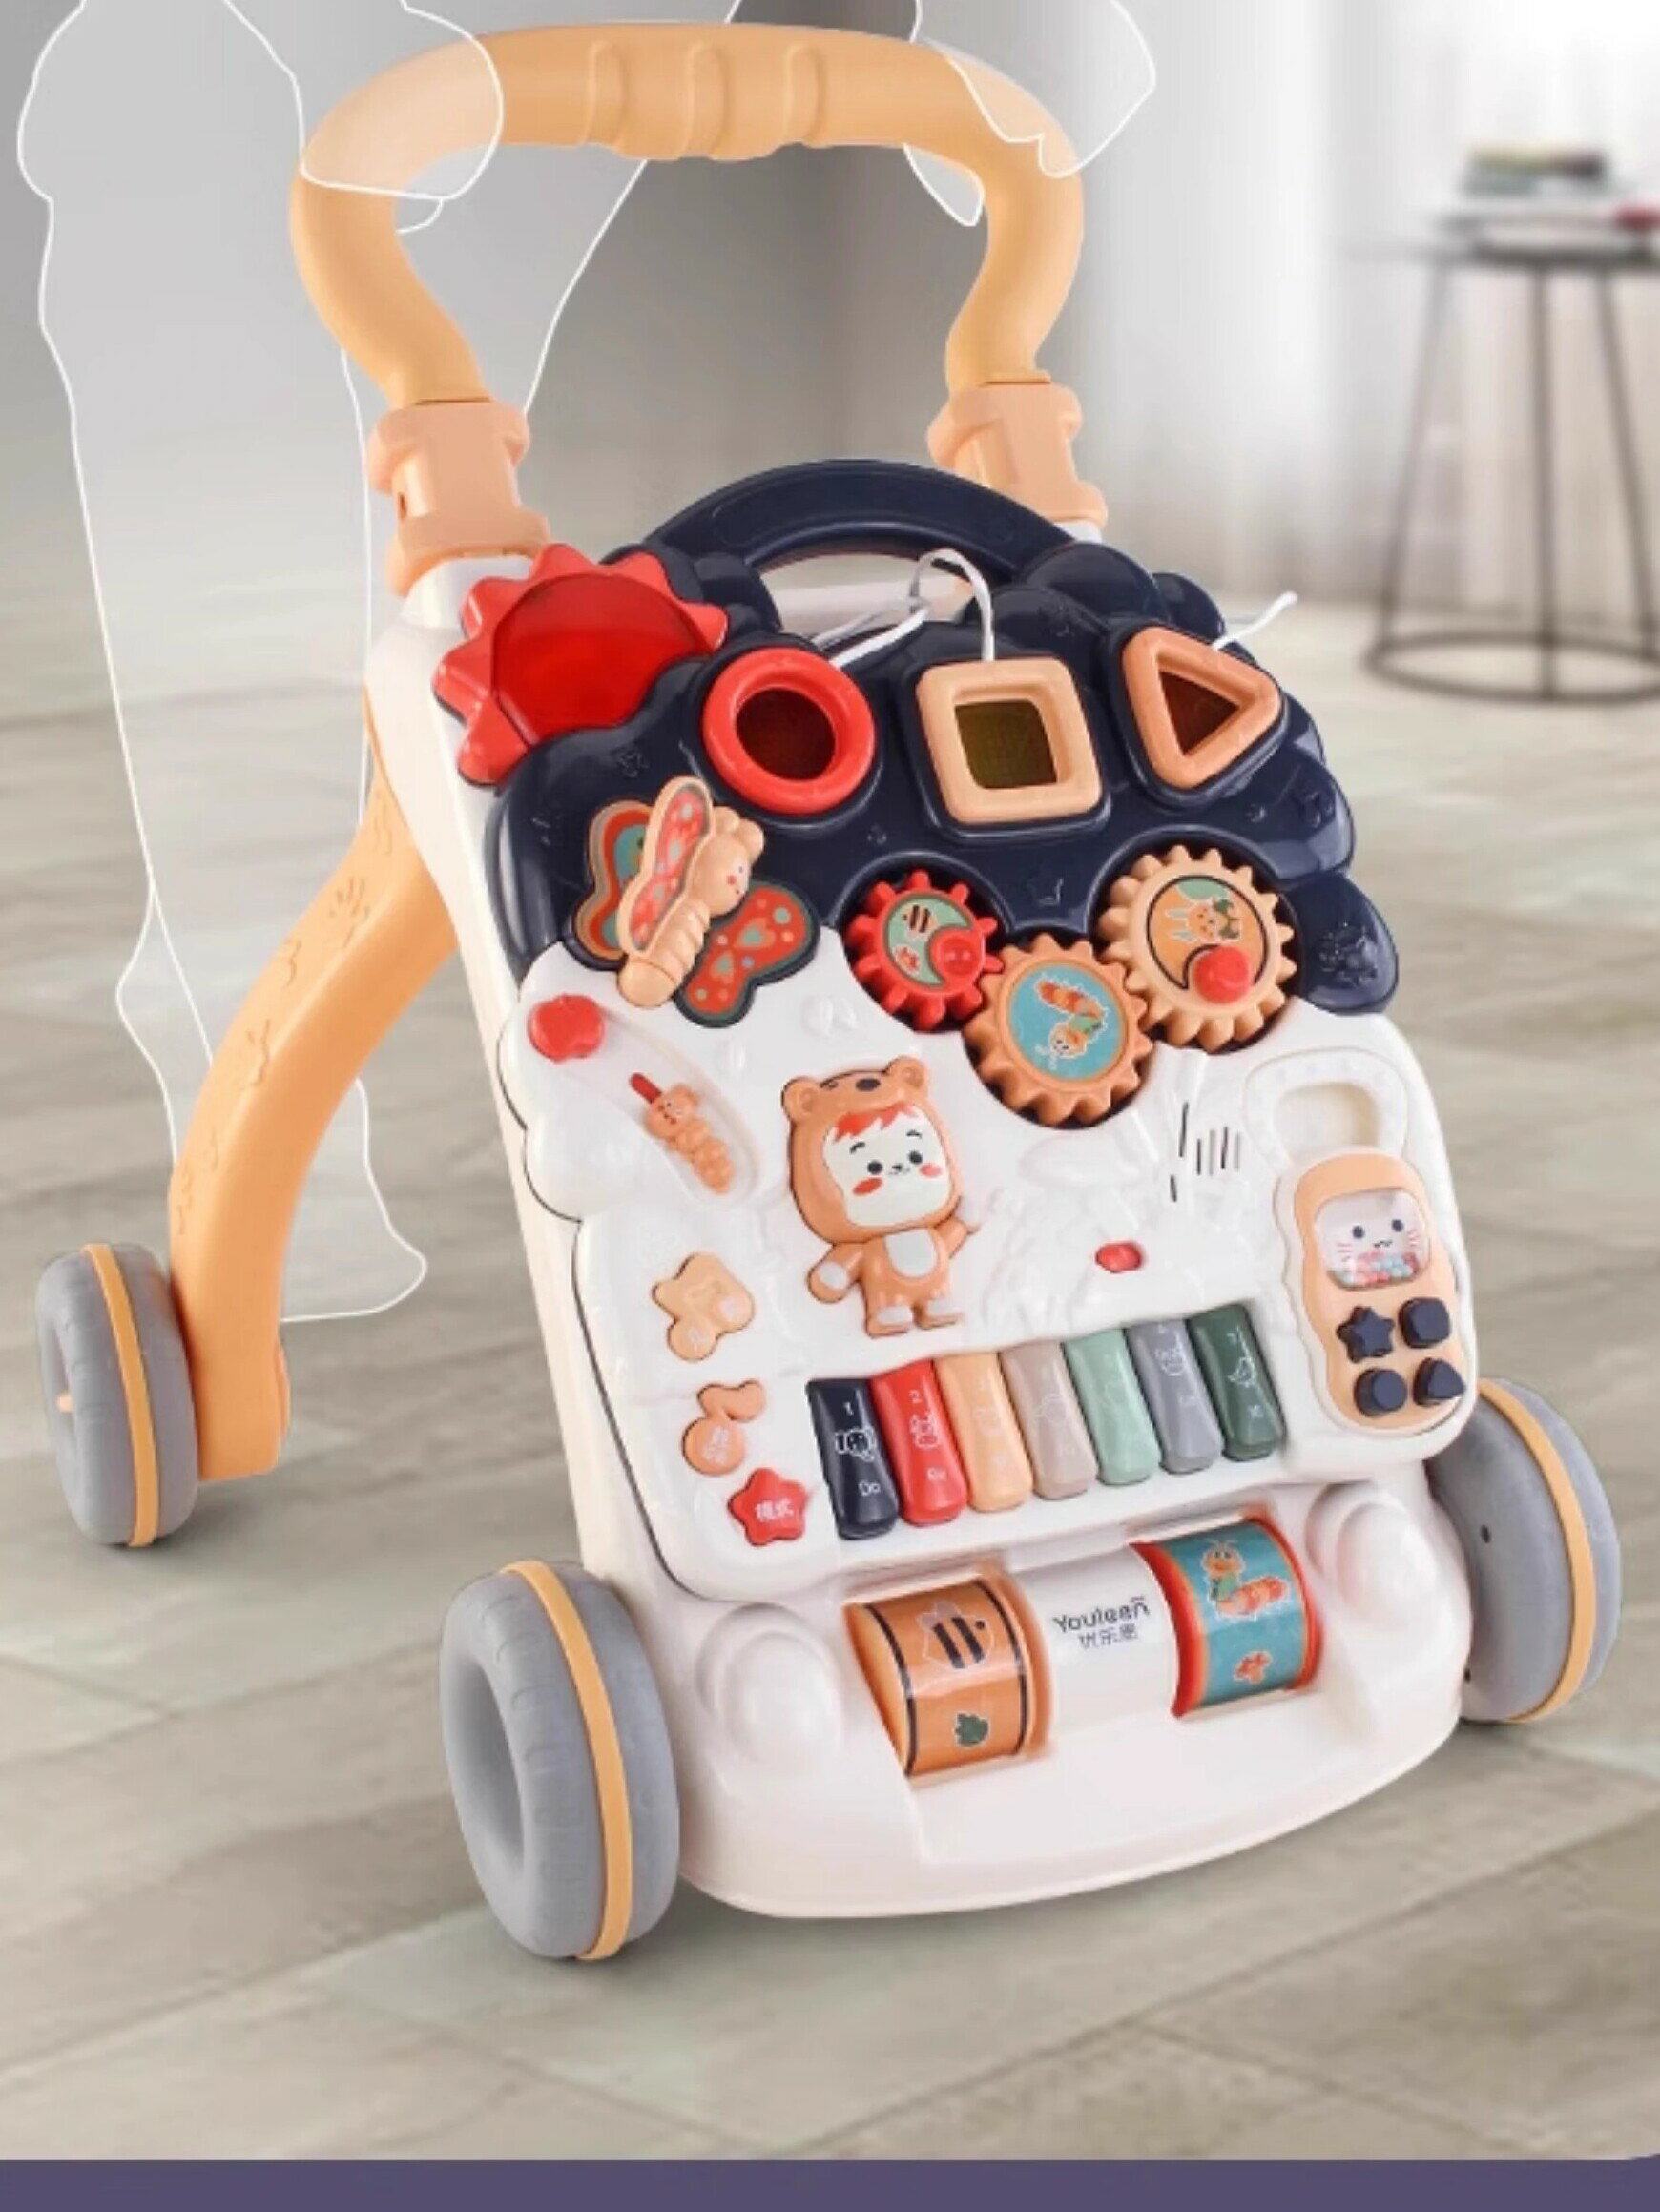 優樂恩嬰兒學步車寶寶多功能手推輔助車防側翻O型腿9月助步車玩具